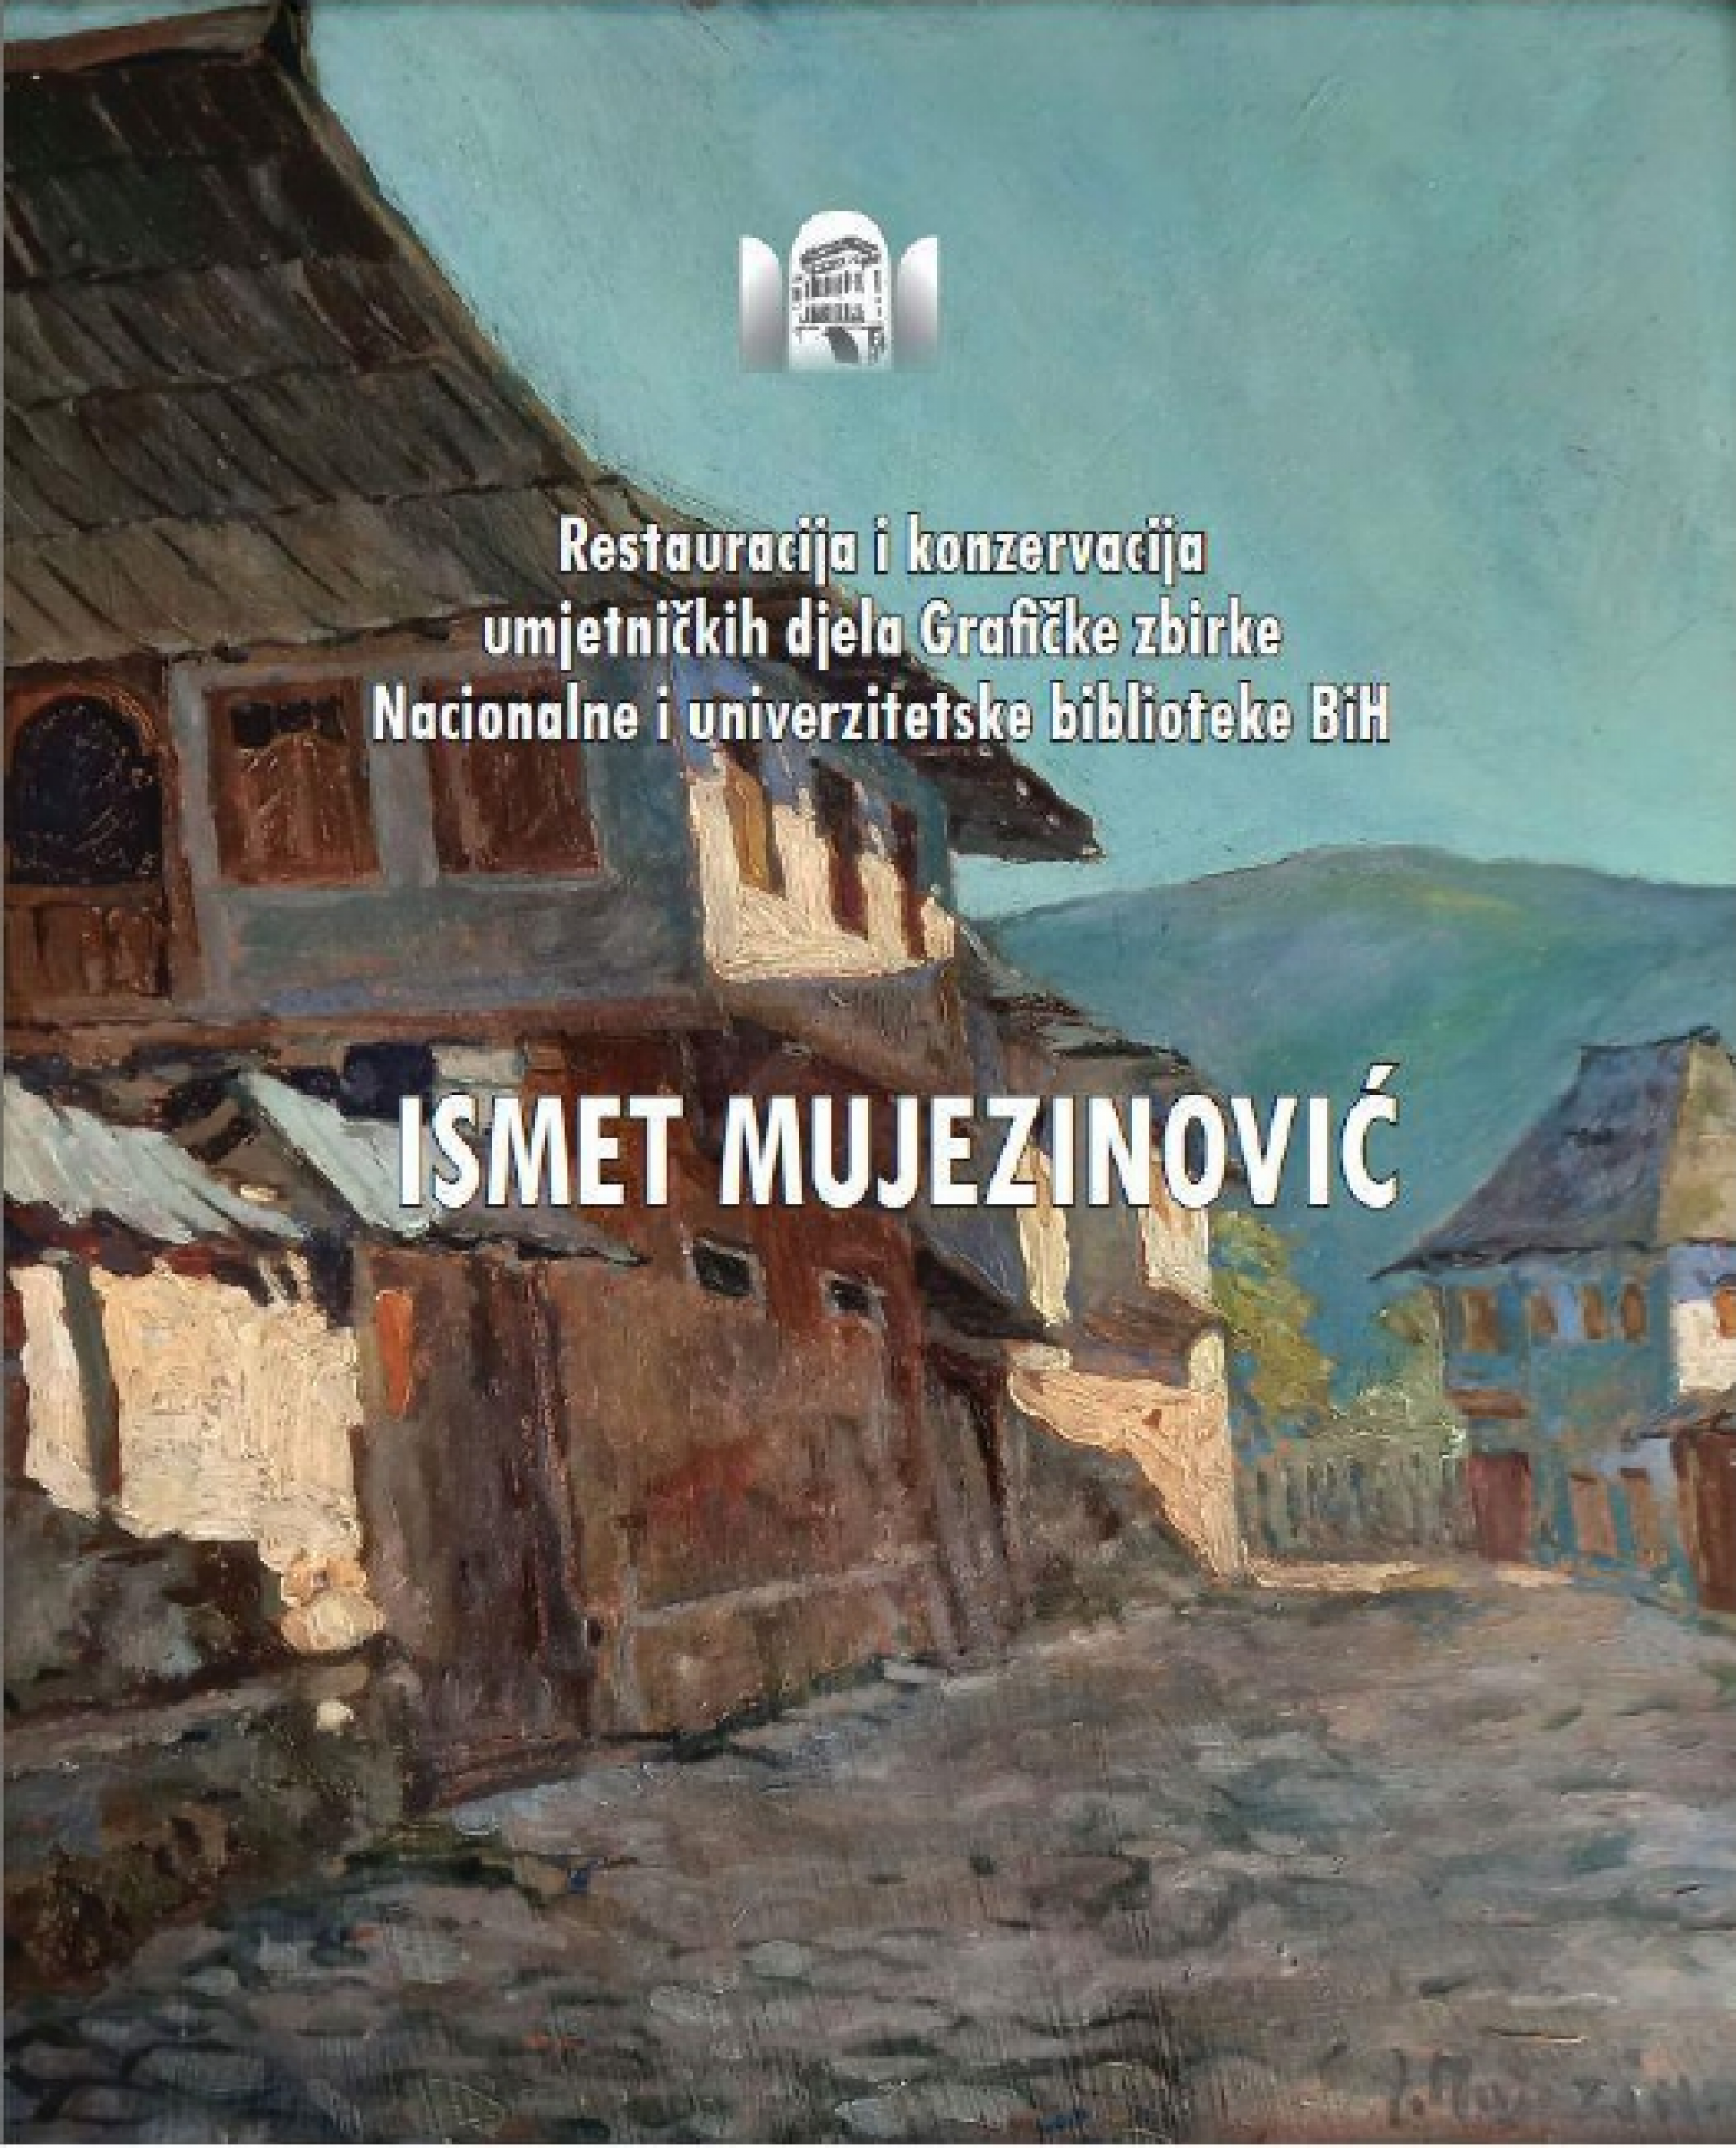 Sutra promocija kataloga posvećenog djelu slikara Ismeta Mujezinovića